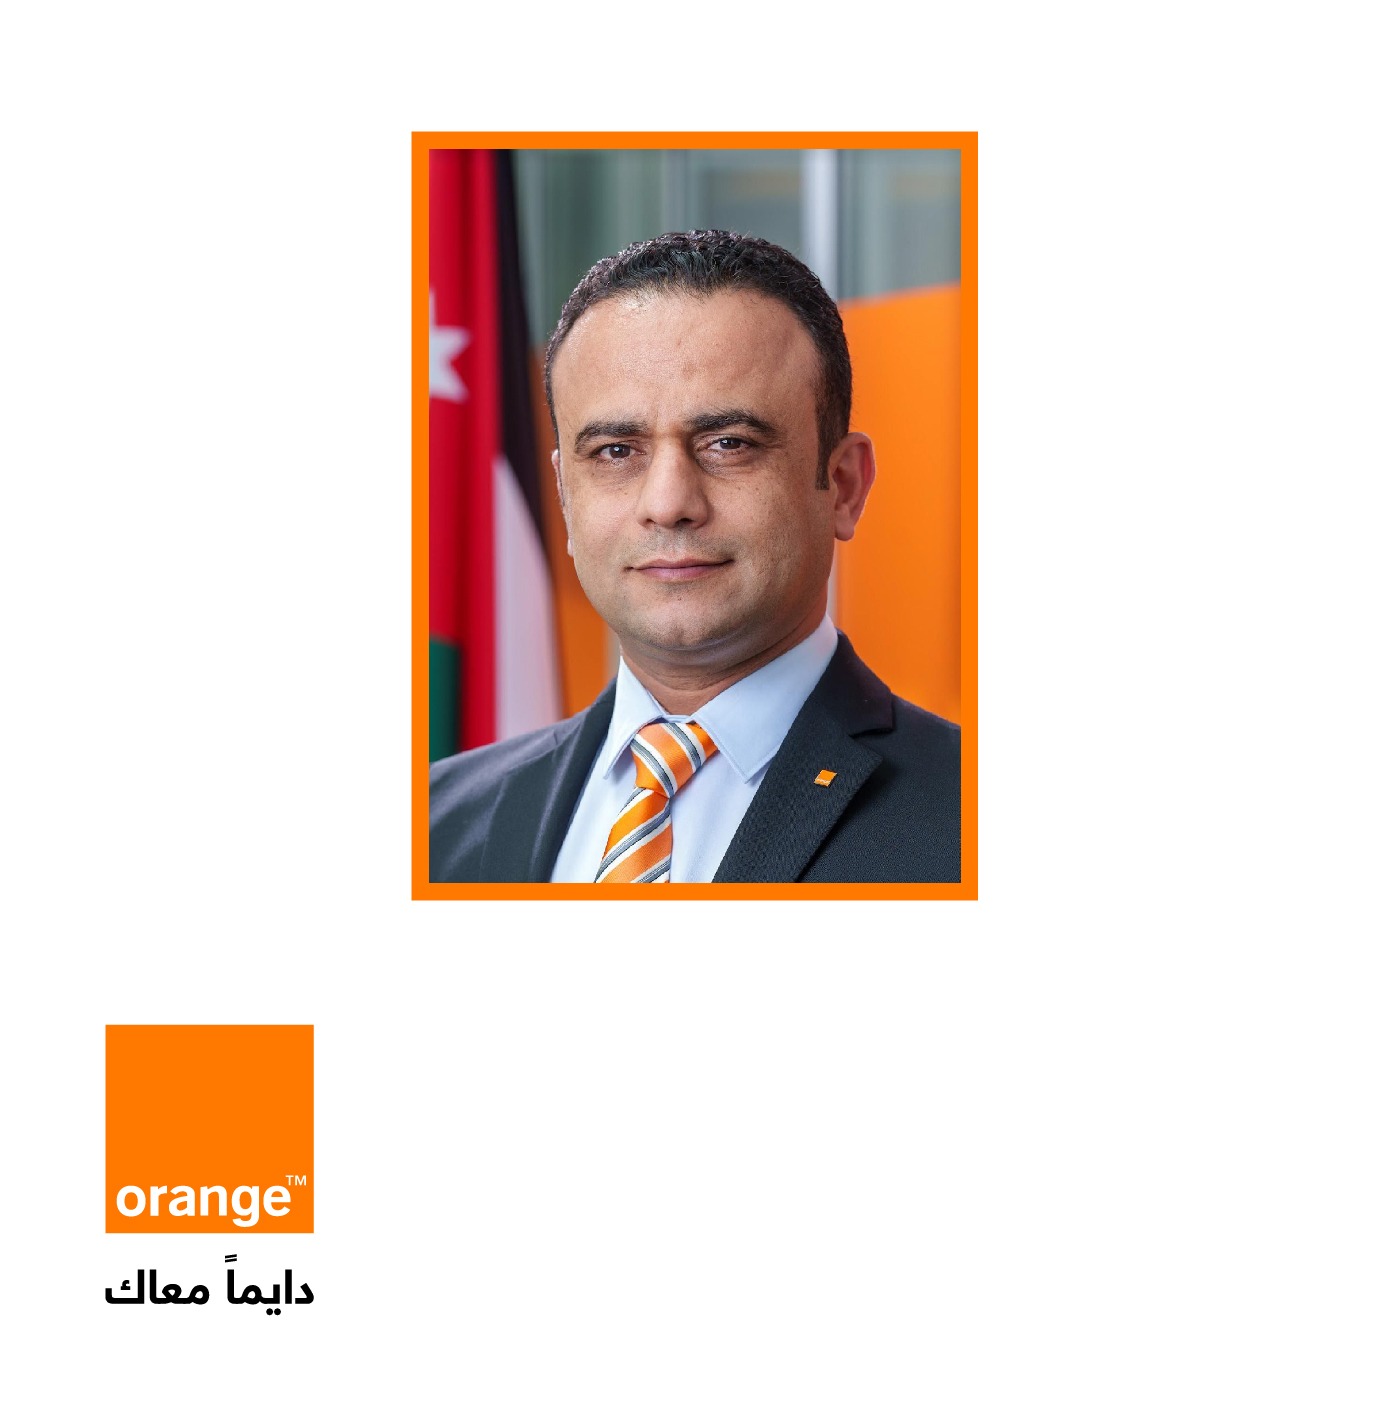 محمد أبو الغنم، المدير التنفيذي للمالية المعيّن حديثاً في أورنج الأردن: خبرة ورؤية استراتيجية